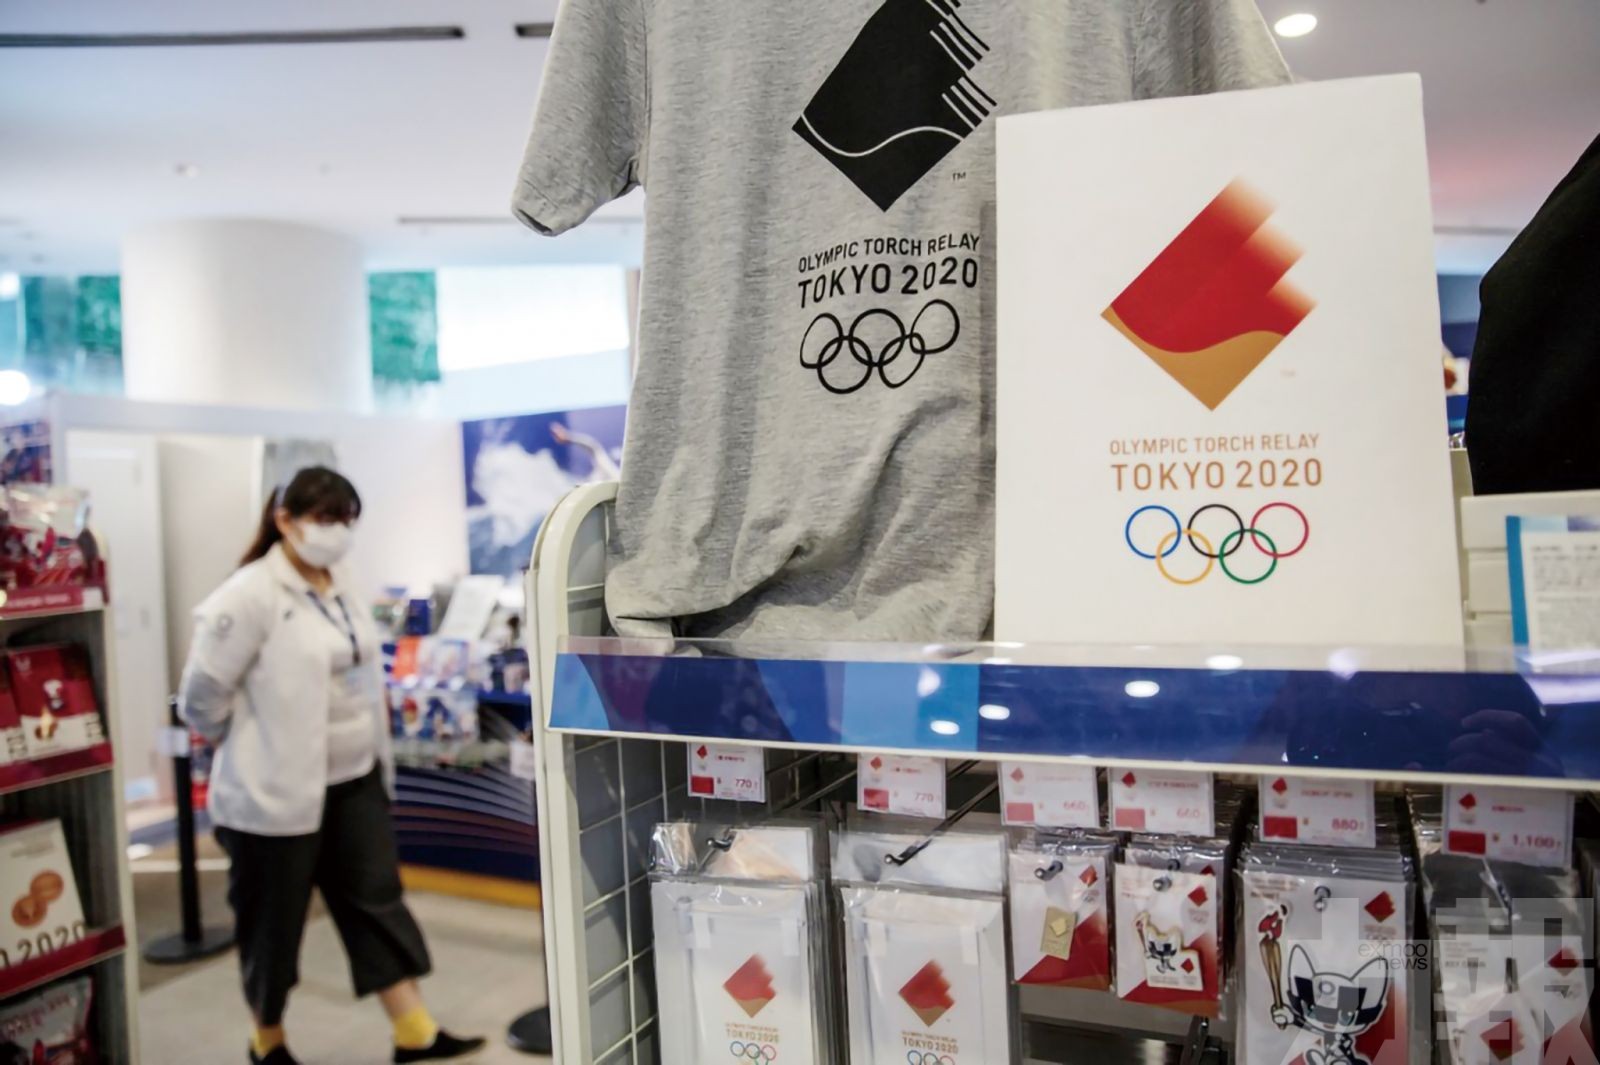 日本奧組委表明東京奧運不會再推遲